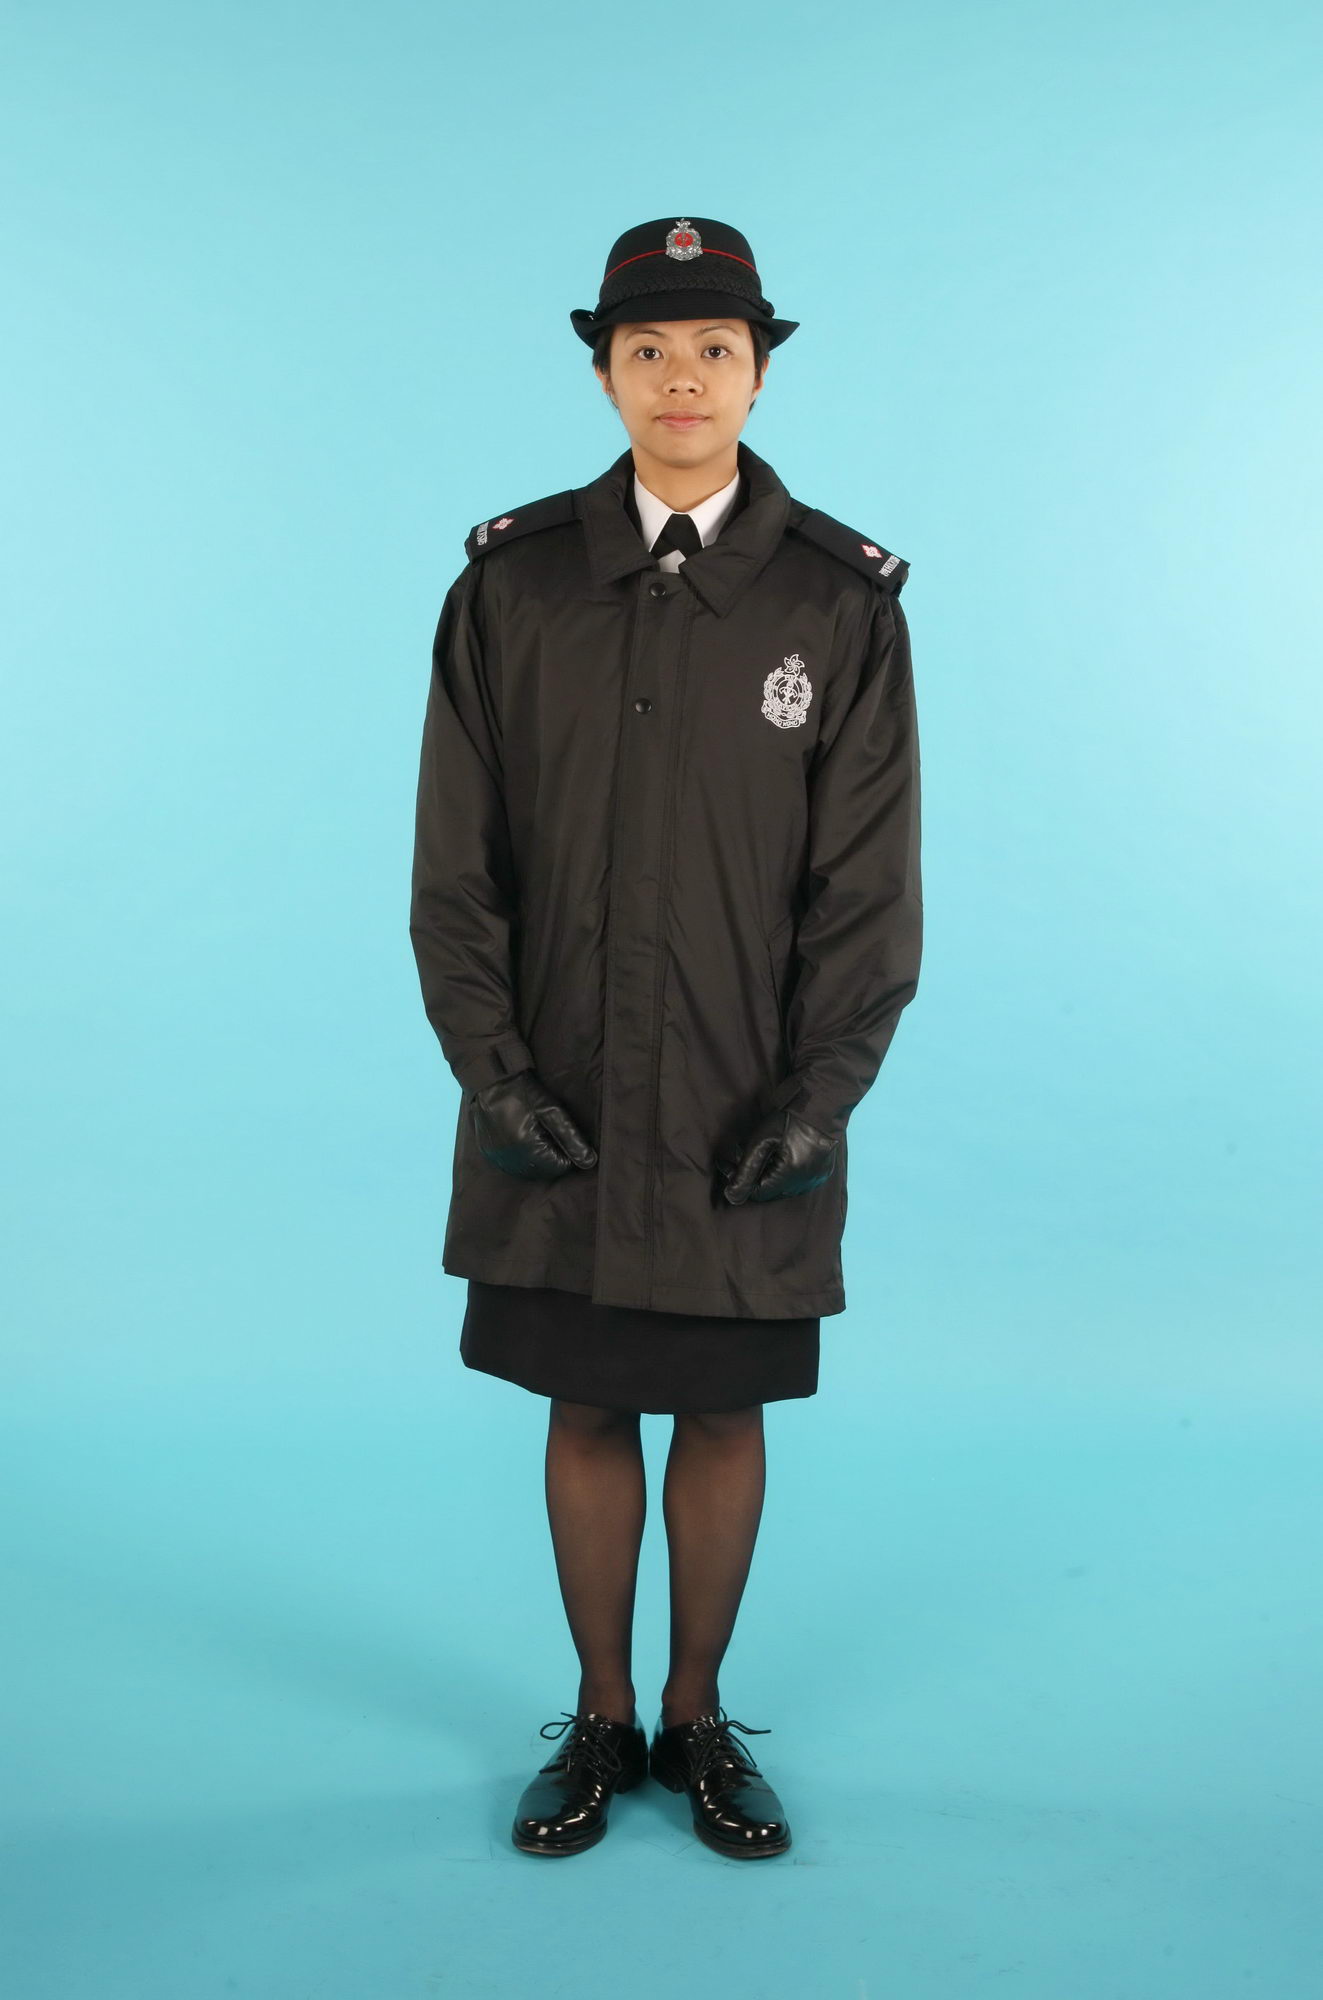 Female Officer Uniform 107